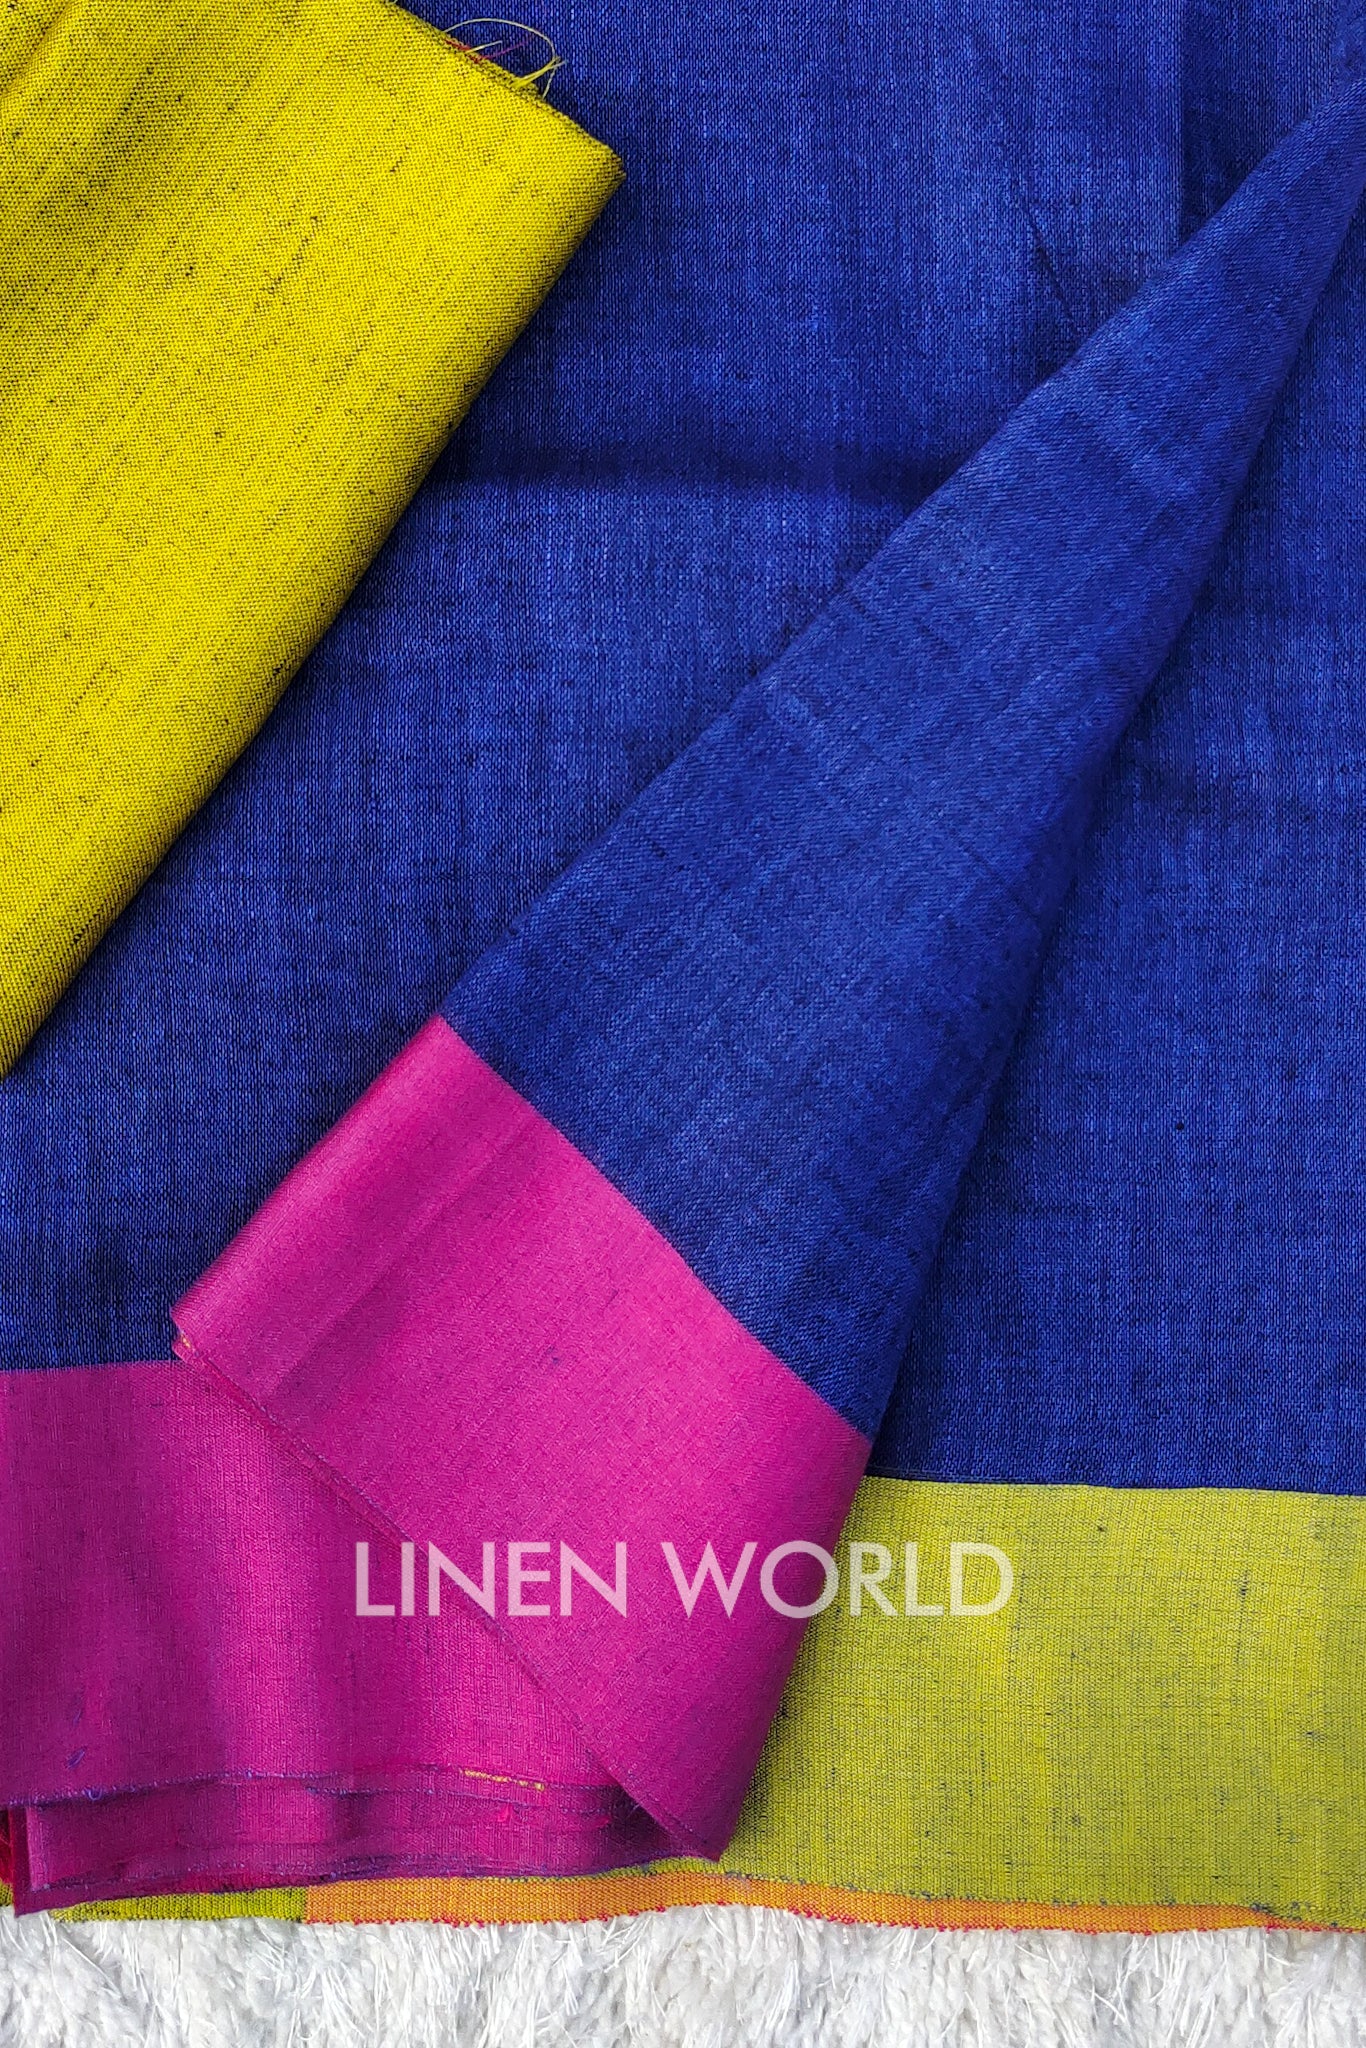 veena - blue organic linen saree - linenworldonline.in